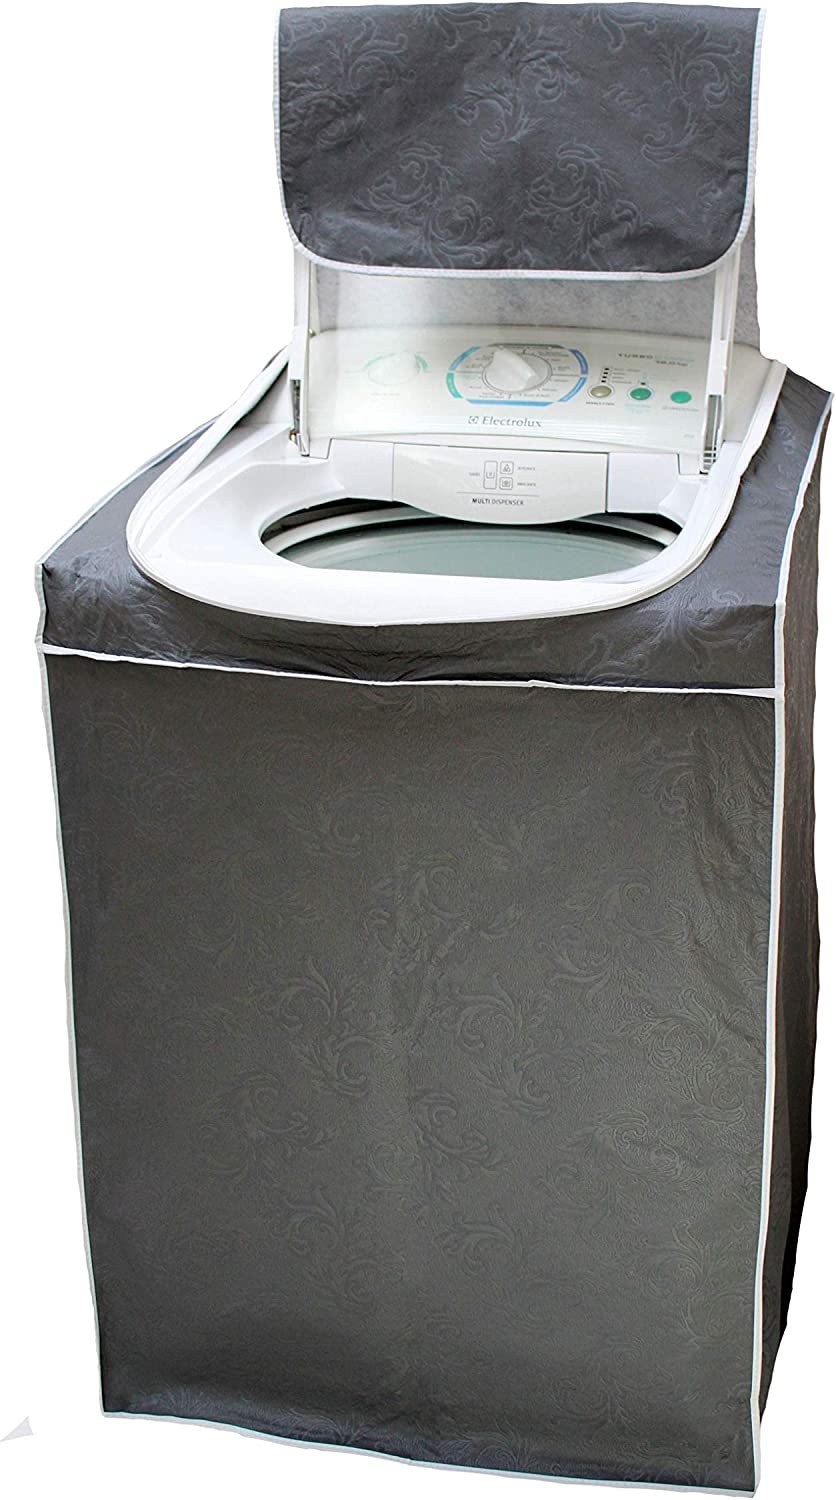 Capa para Máquina de Lavar Com Zíper - Tam. M - PRETO - Todas 5kg a 14kg - Electrolux Brastemp Consu